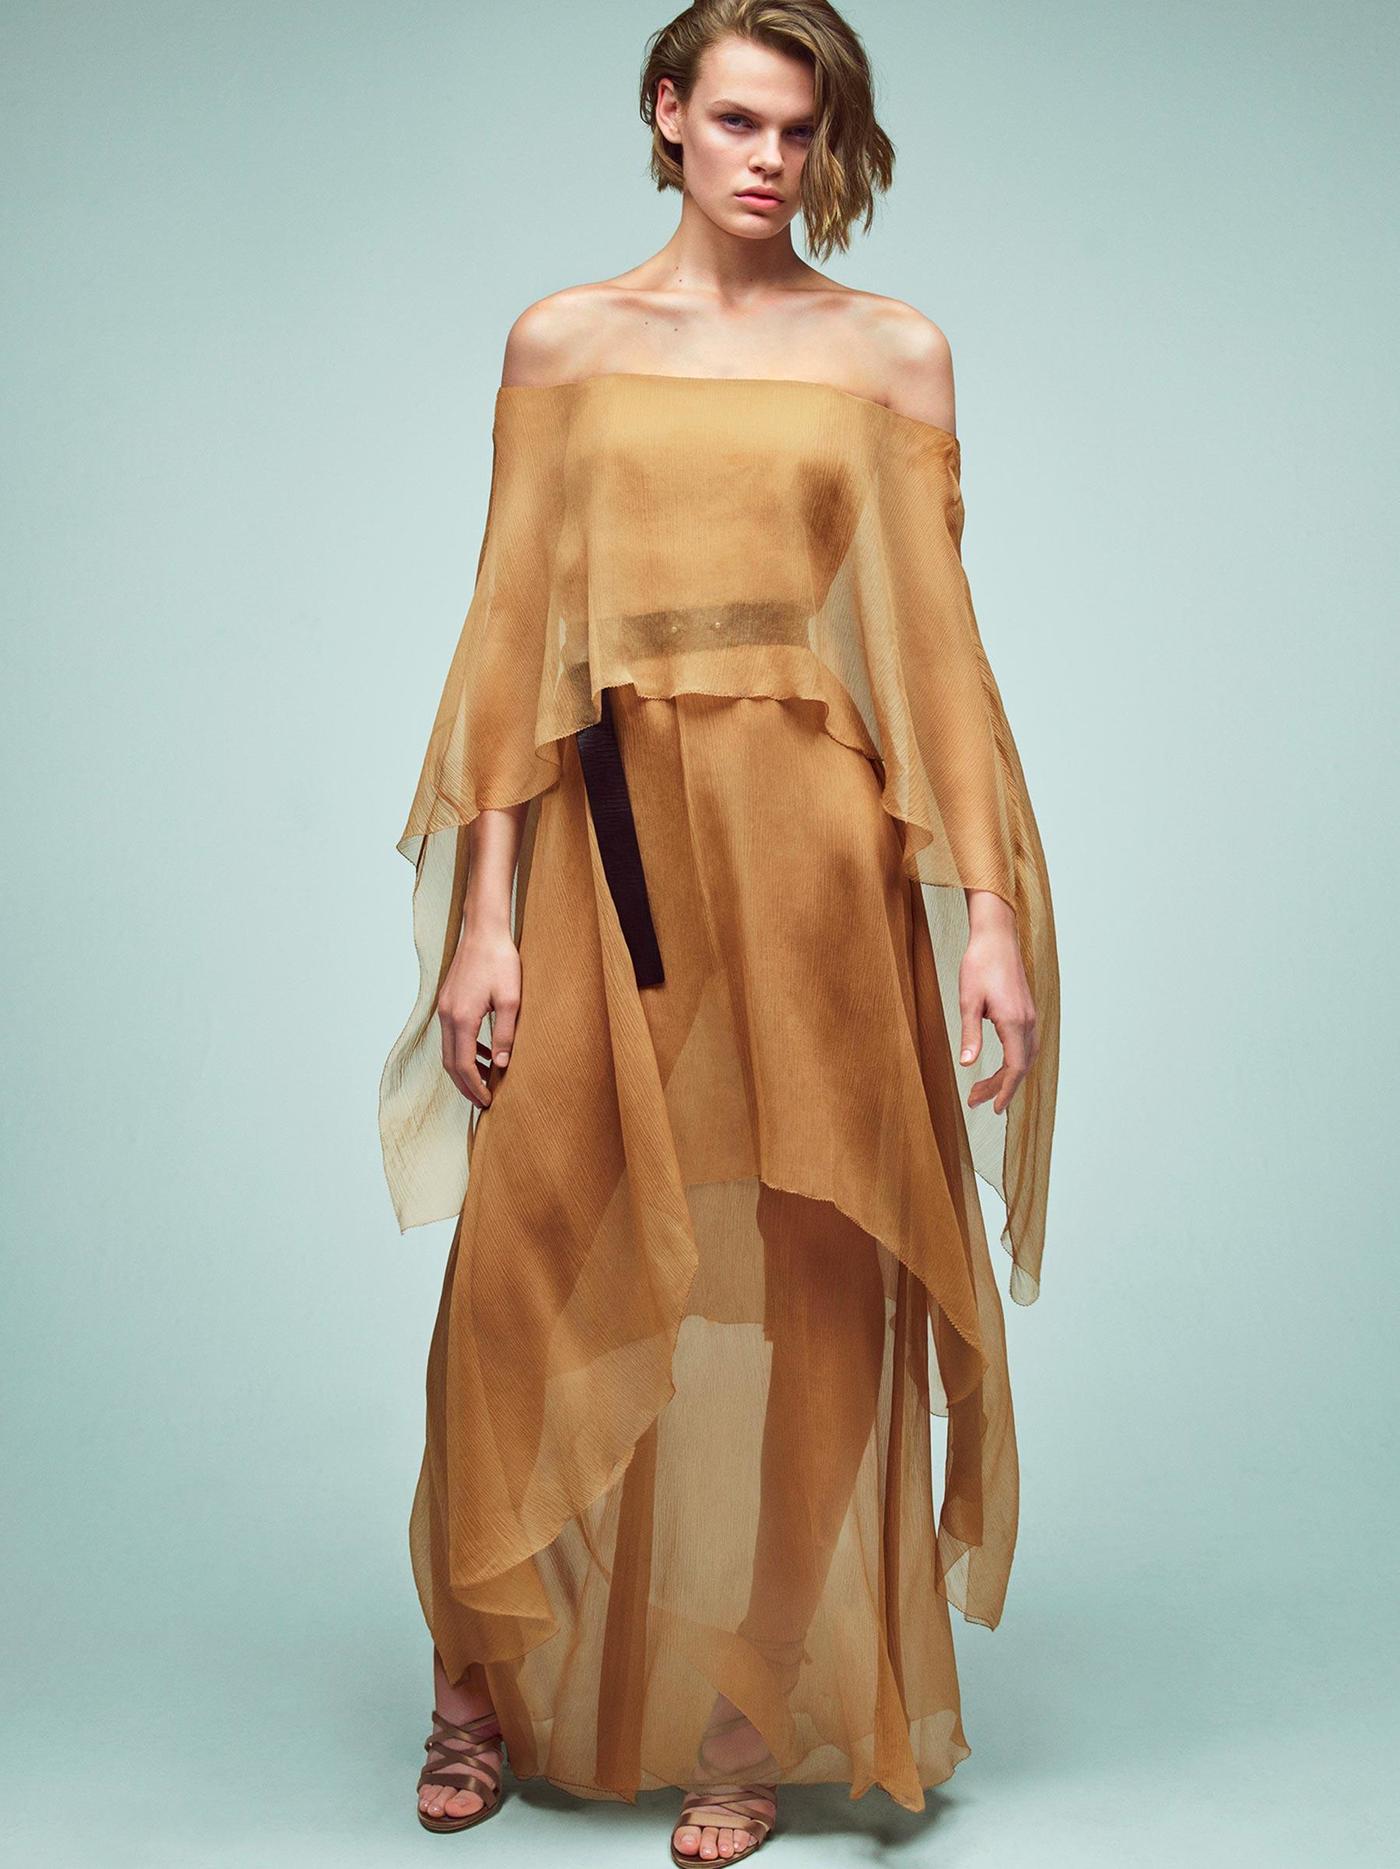 imagen 5 de Transparencias, brillo, color y espaldas de escándalo, así es la moda de Alberta Ferretti en primavera.